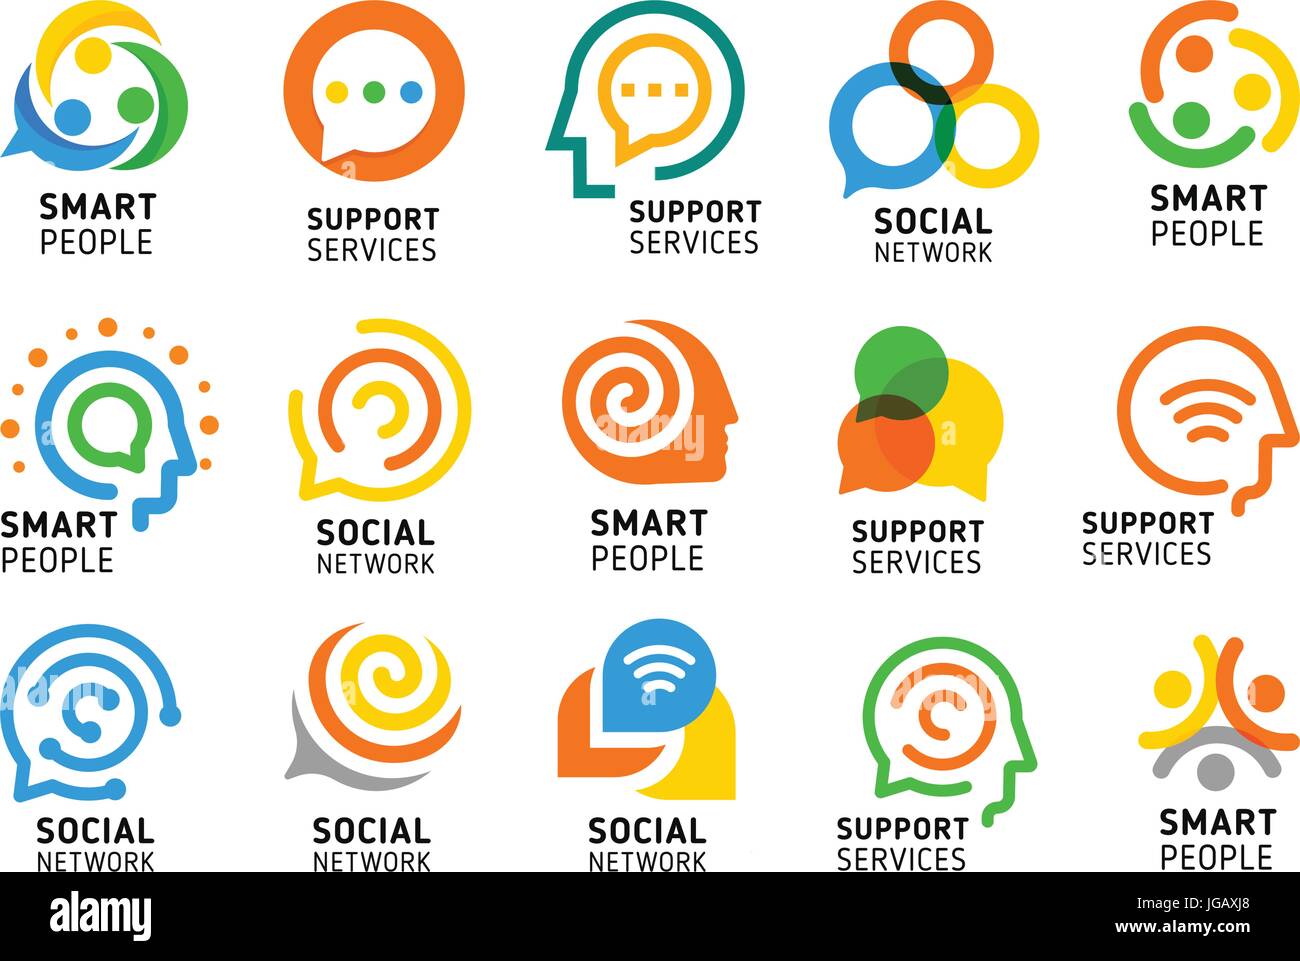 Soziales Netzwerk für clevere Leute mit kreativen Gehirn. Dienstleistungen-Icon-Set zu unterstützen. Bunte Vektor-Logo-Sammlung. Stock Vektor